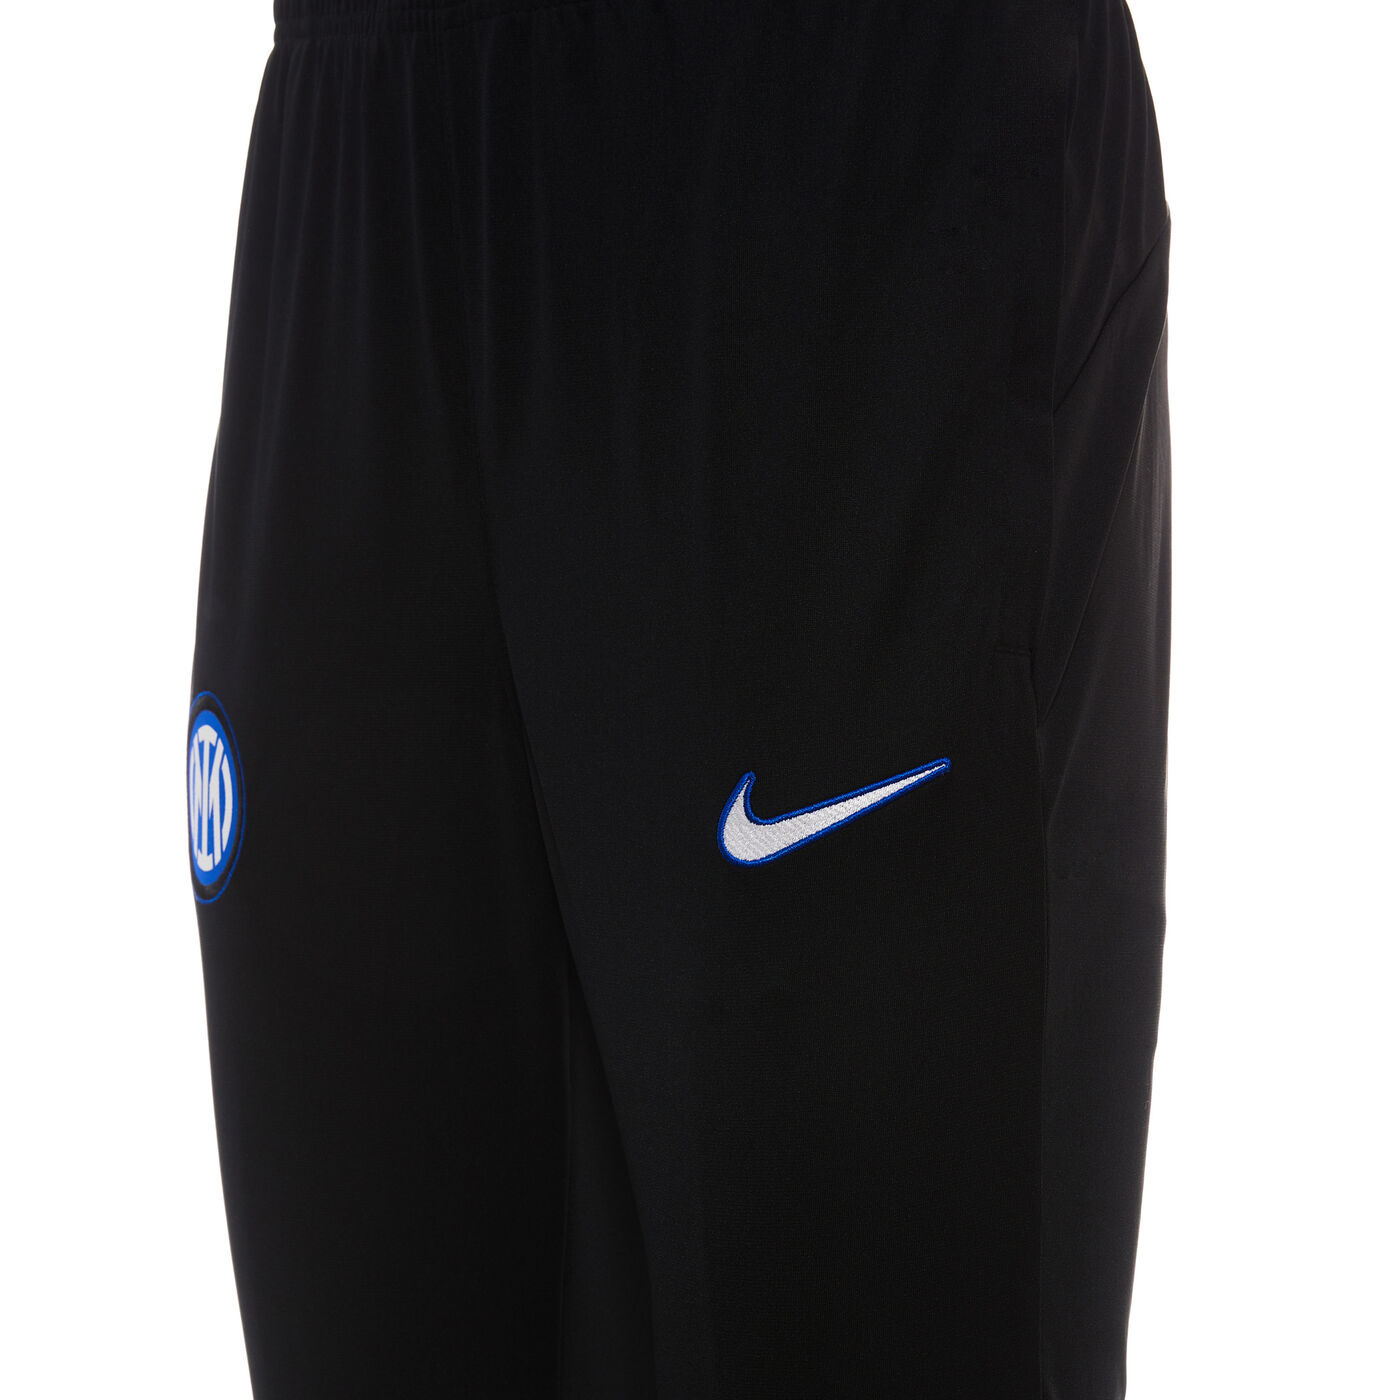 Nike Homme - Nike Pantalon de survêtement Gris - Drest